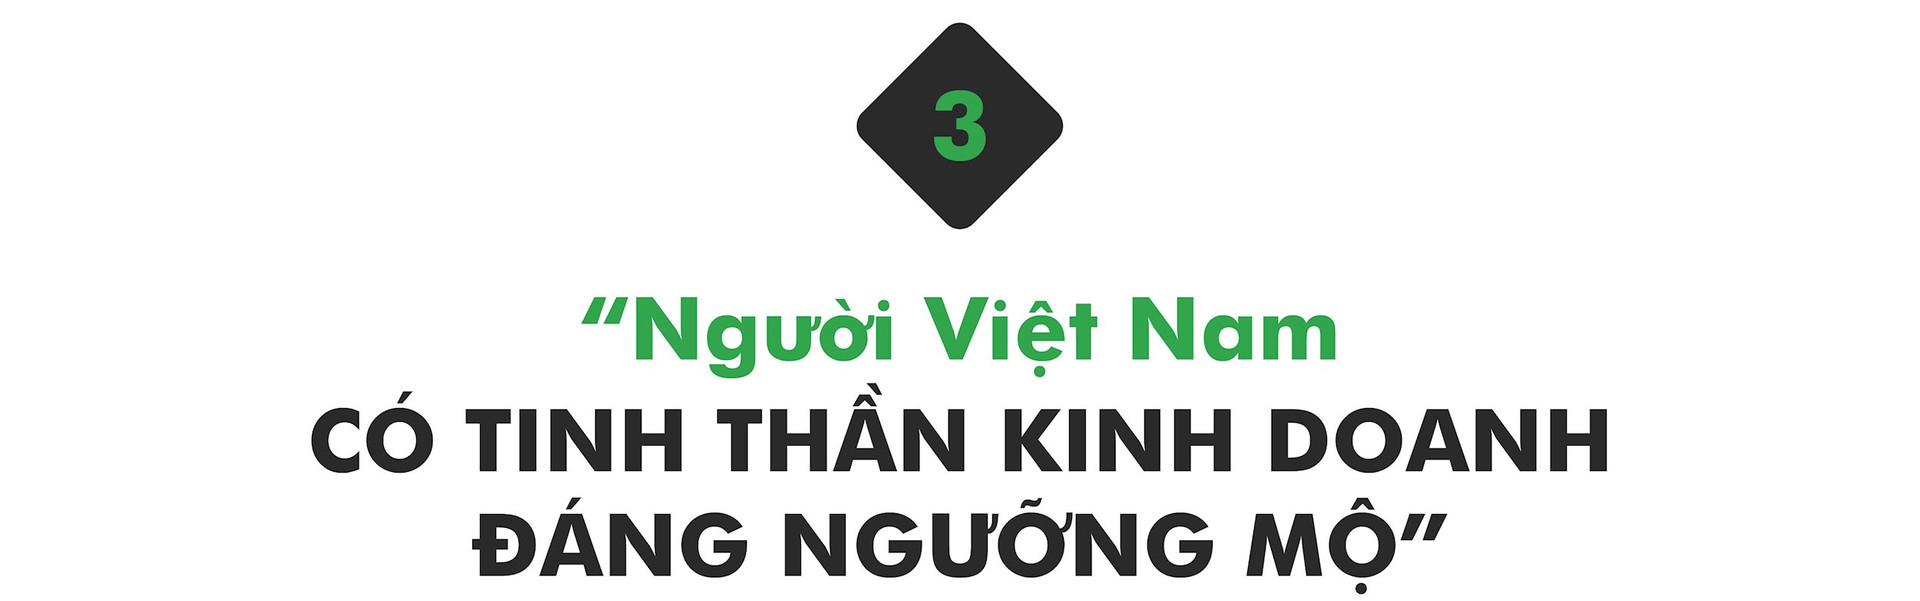 CEO ของ Grab Vietnam มองเห็นจุดหนึ่งจากแผงลอยบนทางเท้า แผงลอยในตรอก: จิตวิญญาณผู้ประกอบการของชาวเวียดนามน่าชื่นชม - รูปภาพ 6